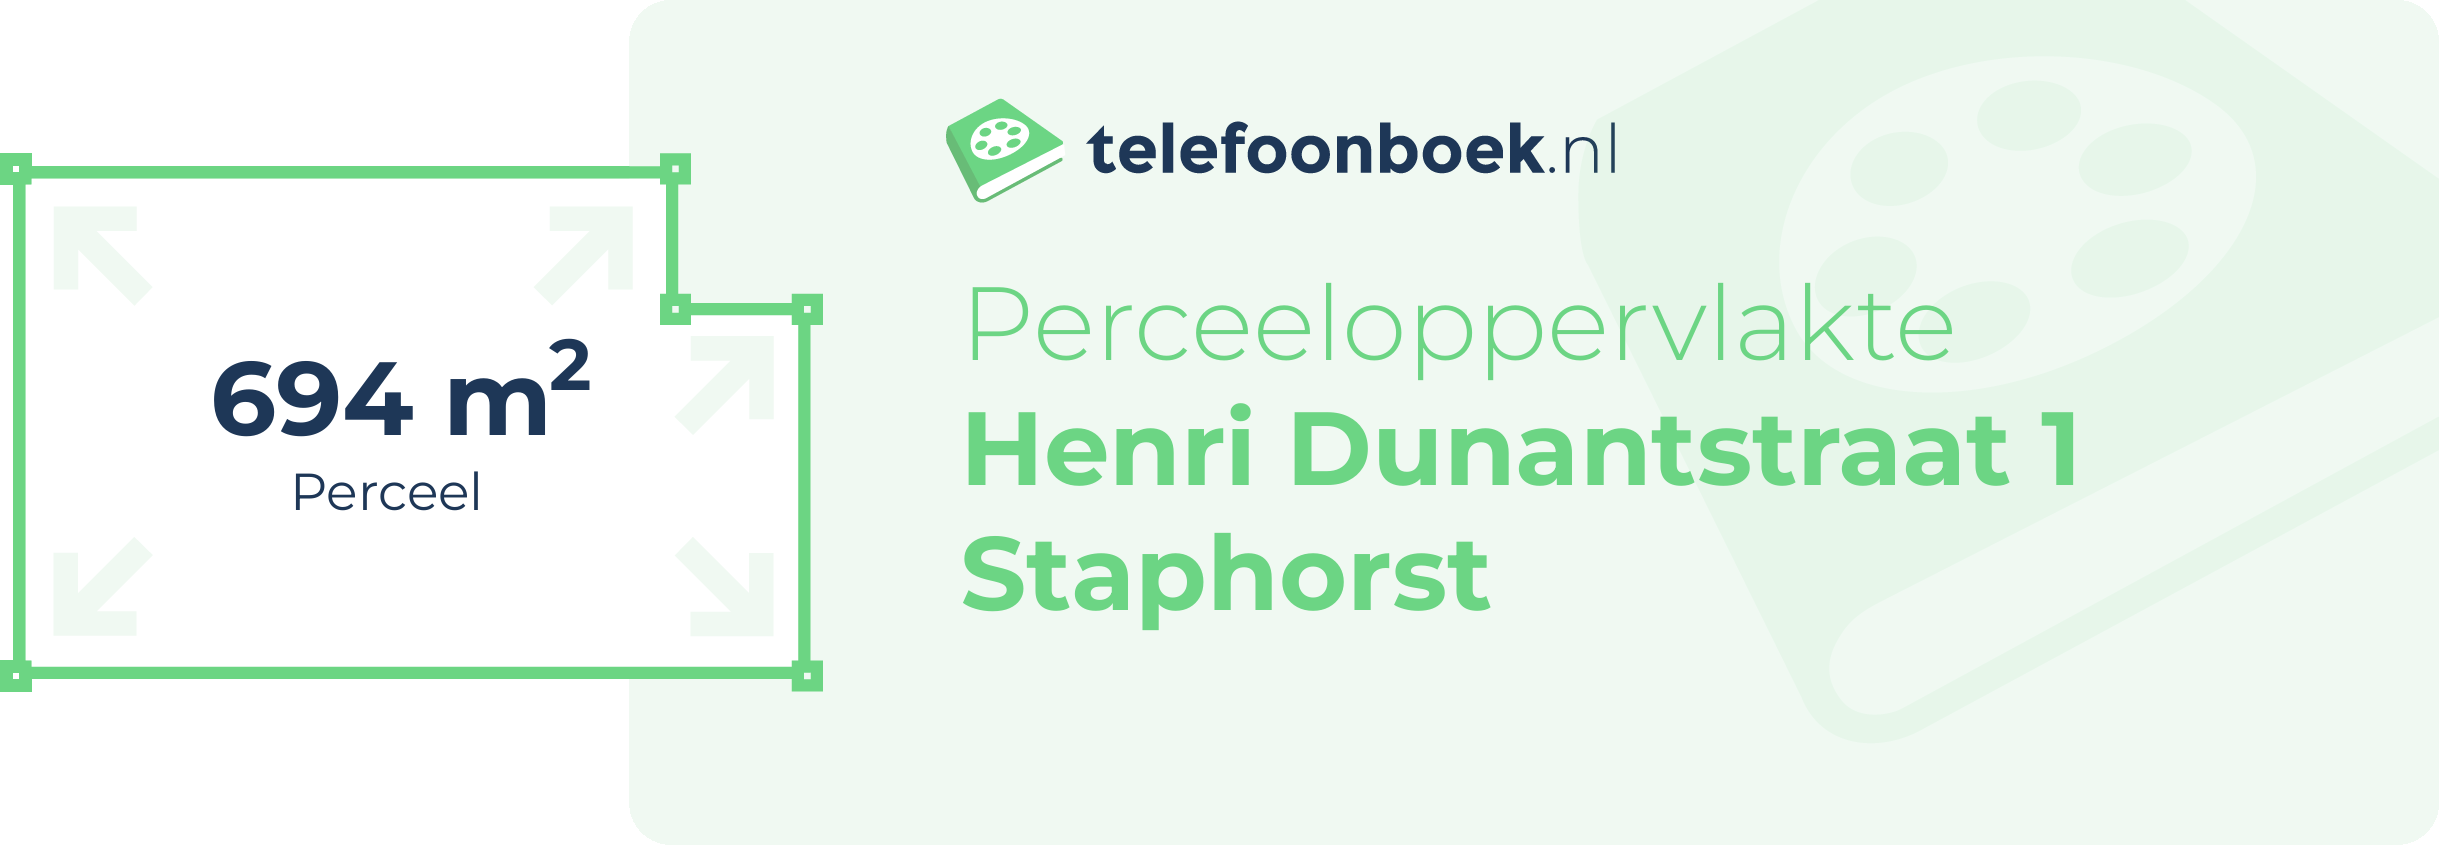 Perceeloppervlakte Henri Dunantstraat 1 Staphorst